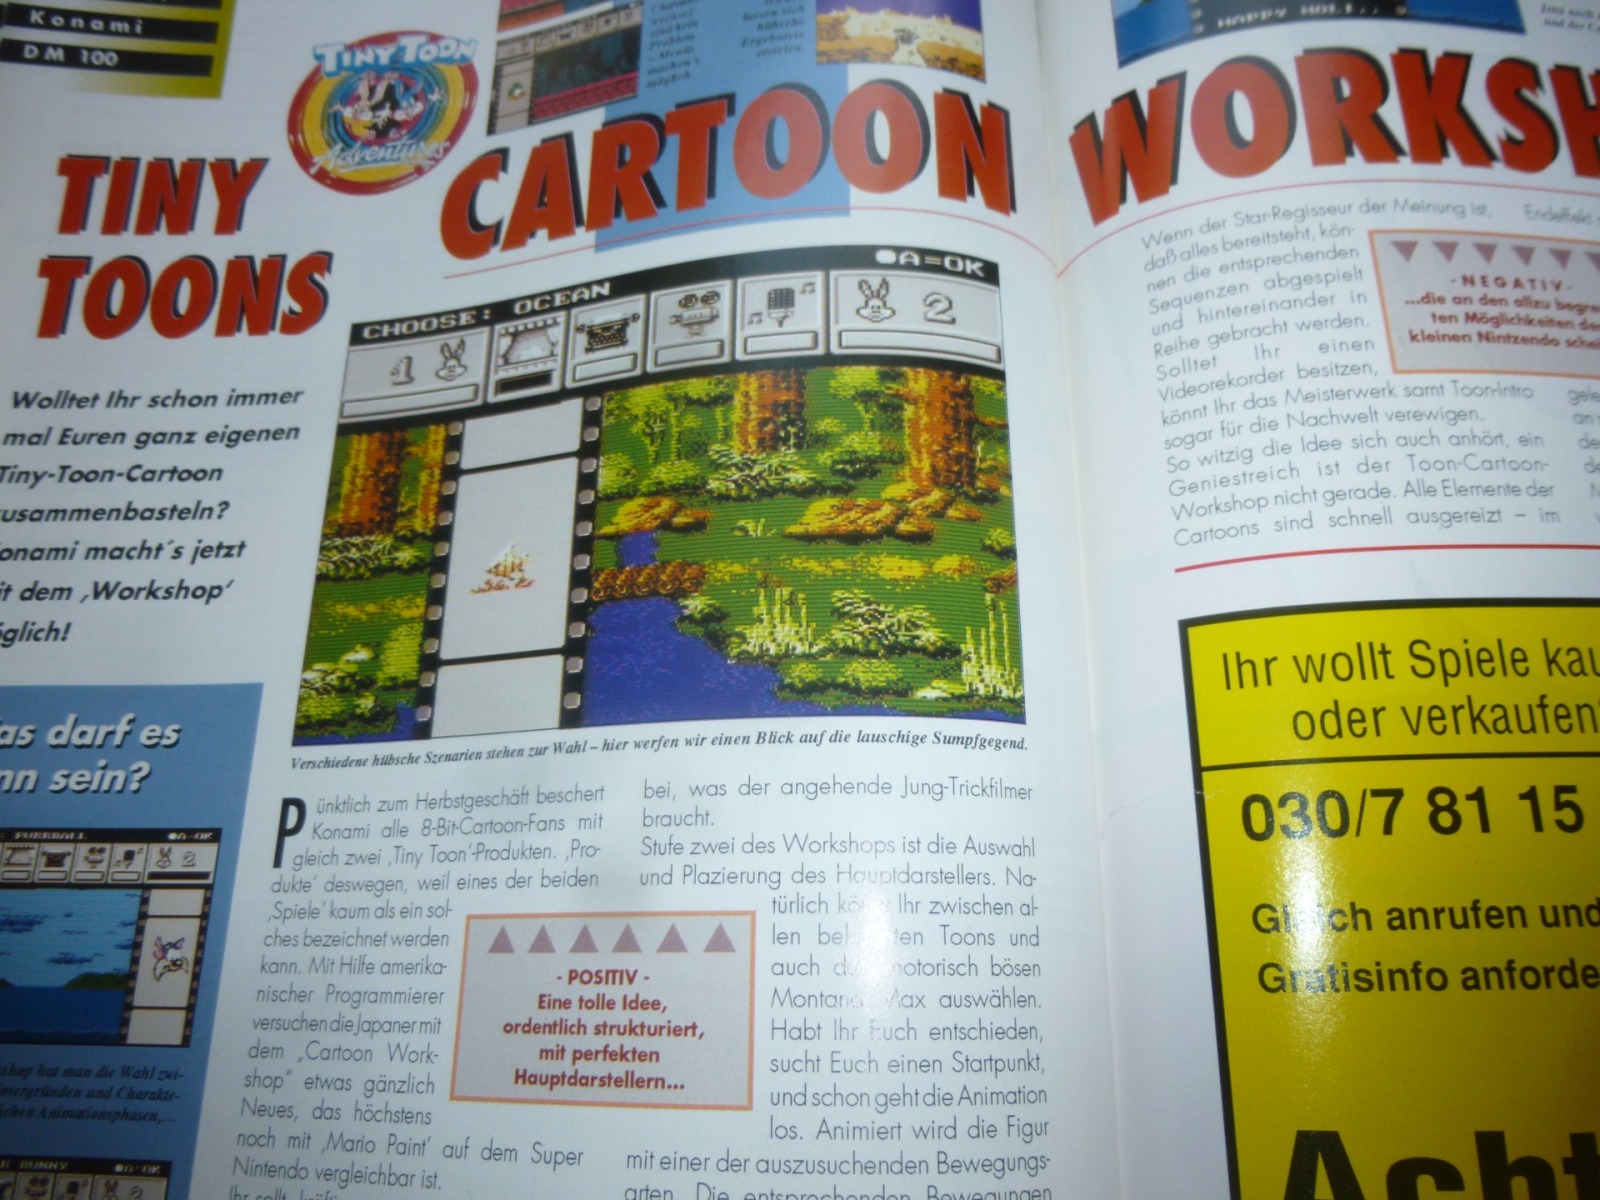 TOTAL Das unabhängige Magazin - 100 Nintendo - Ausgabe 9/93 1993 28